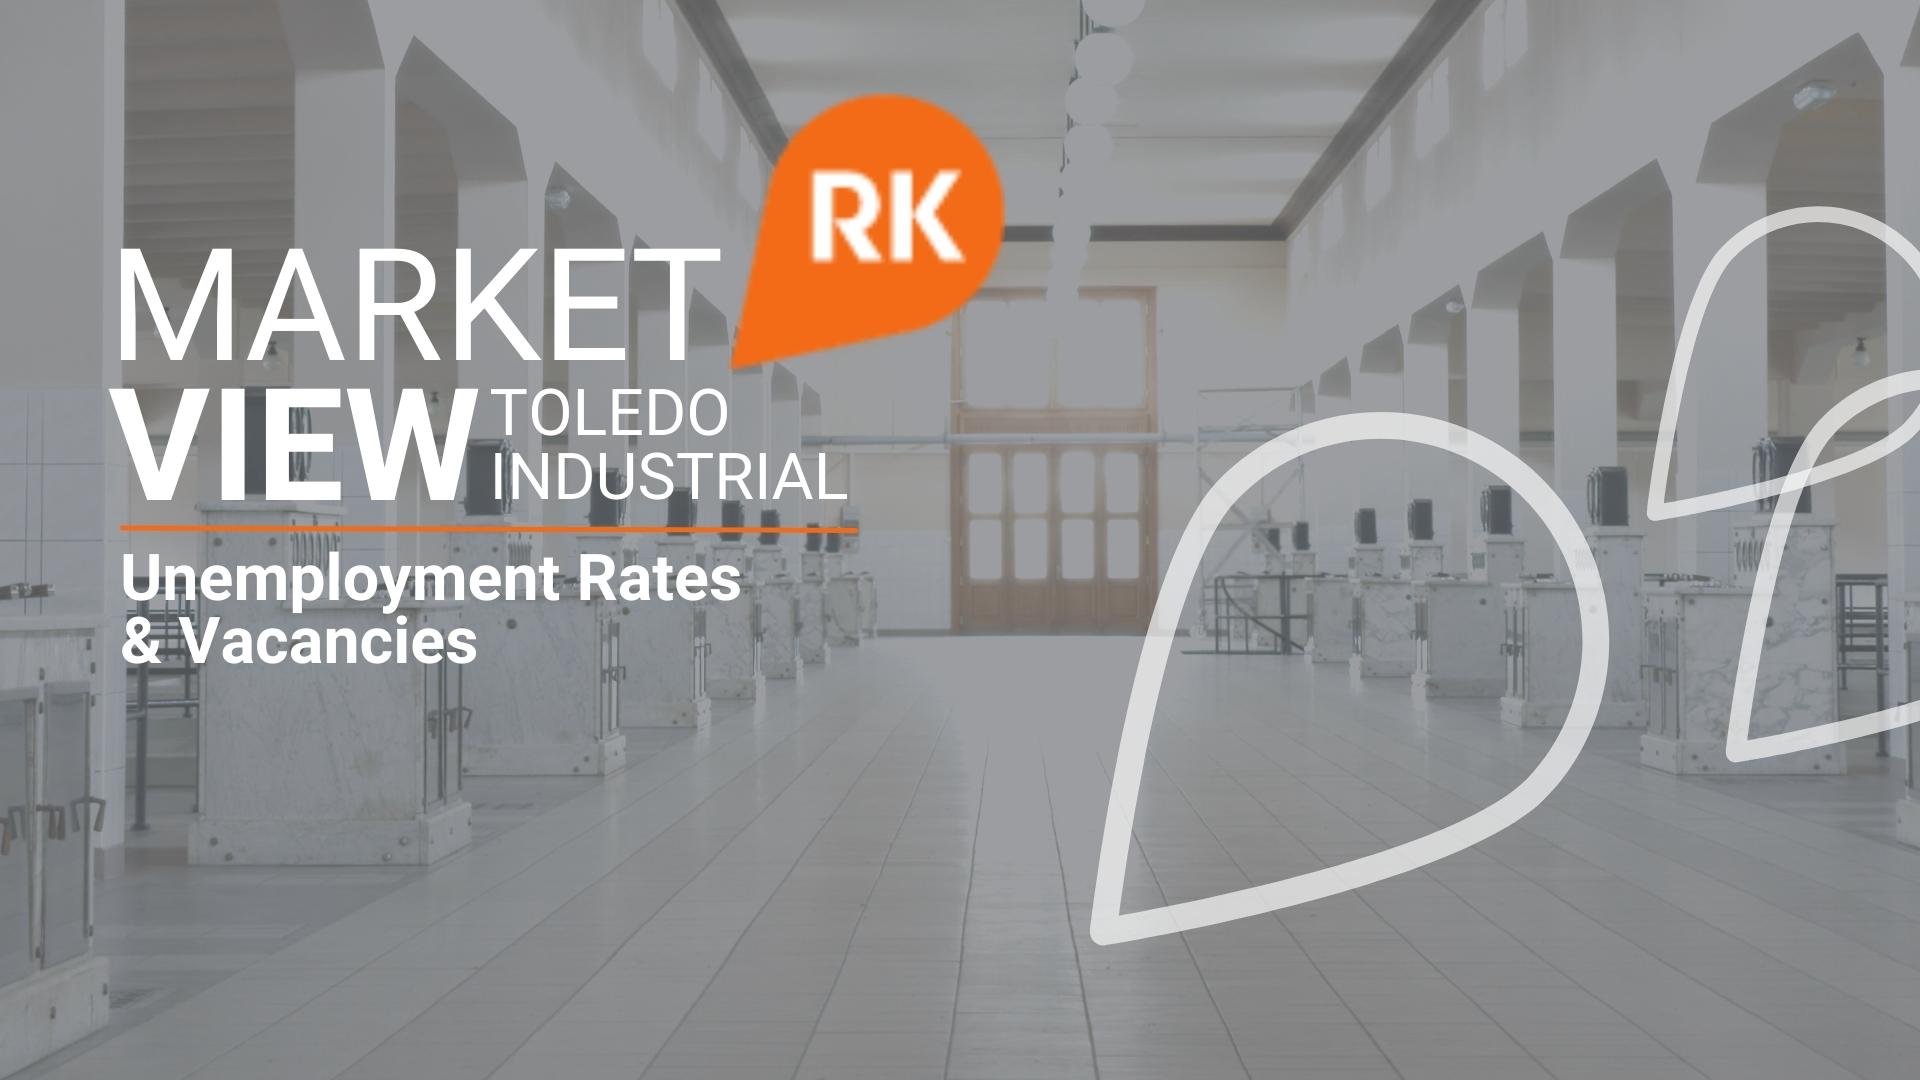 Market View | Toledo Industrial - Unemployment and Vacancies